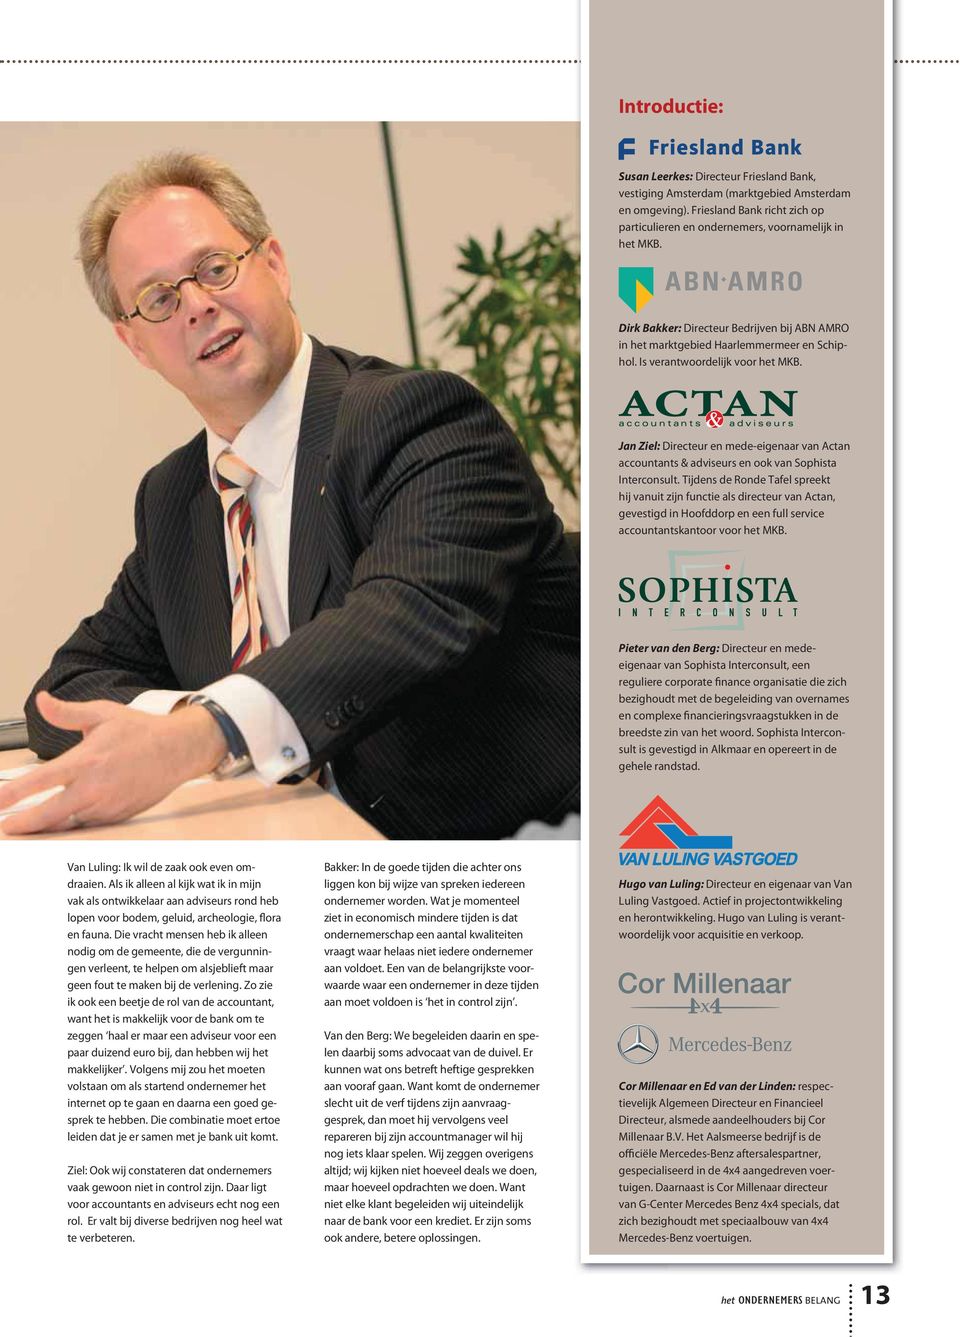 Jan Ziel: Directeur en mede-eigenaar van Actan accountants & adviseurs en ook van Sophista Interconsult.